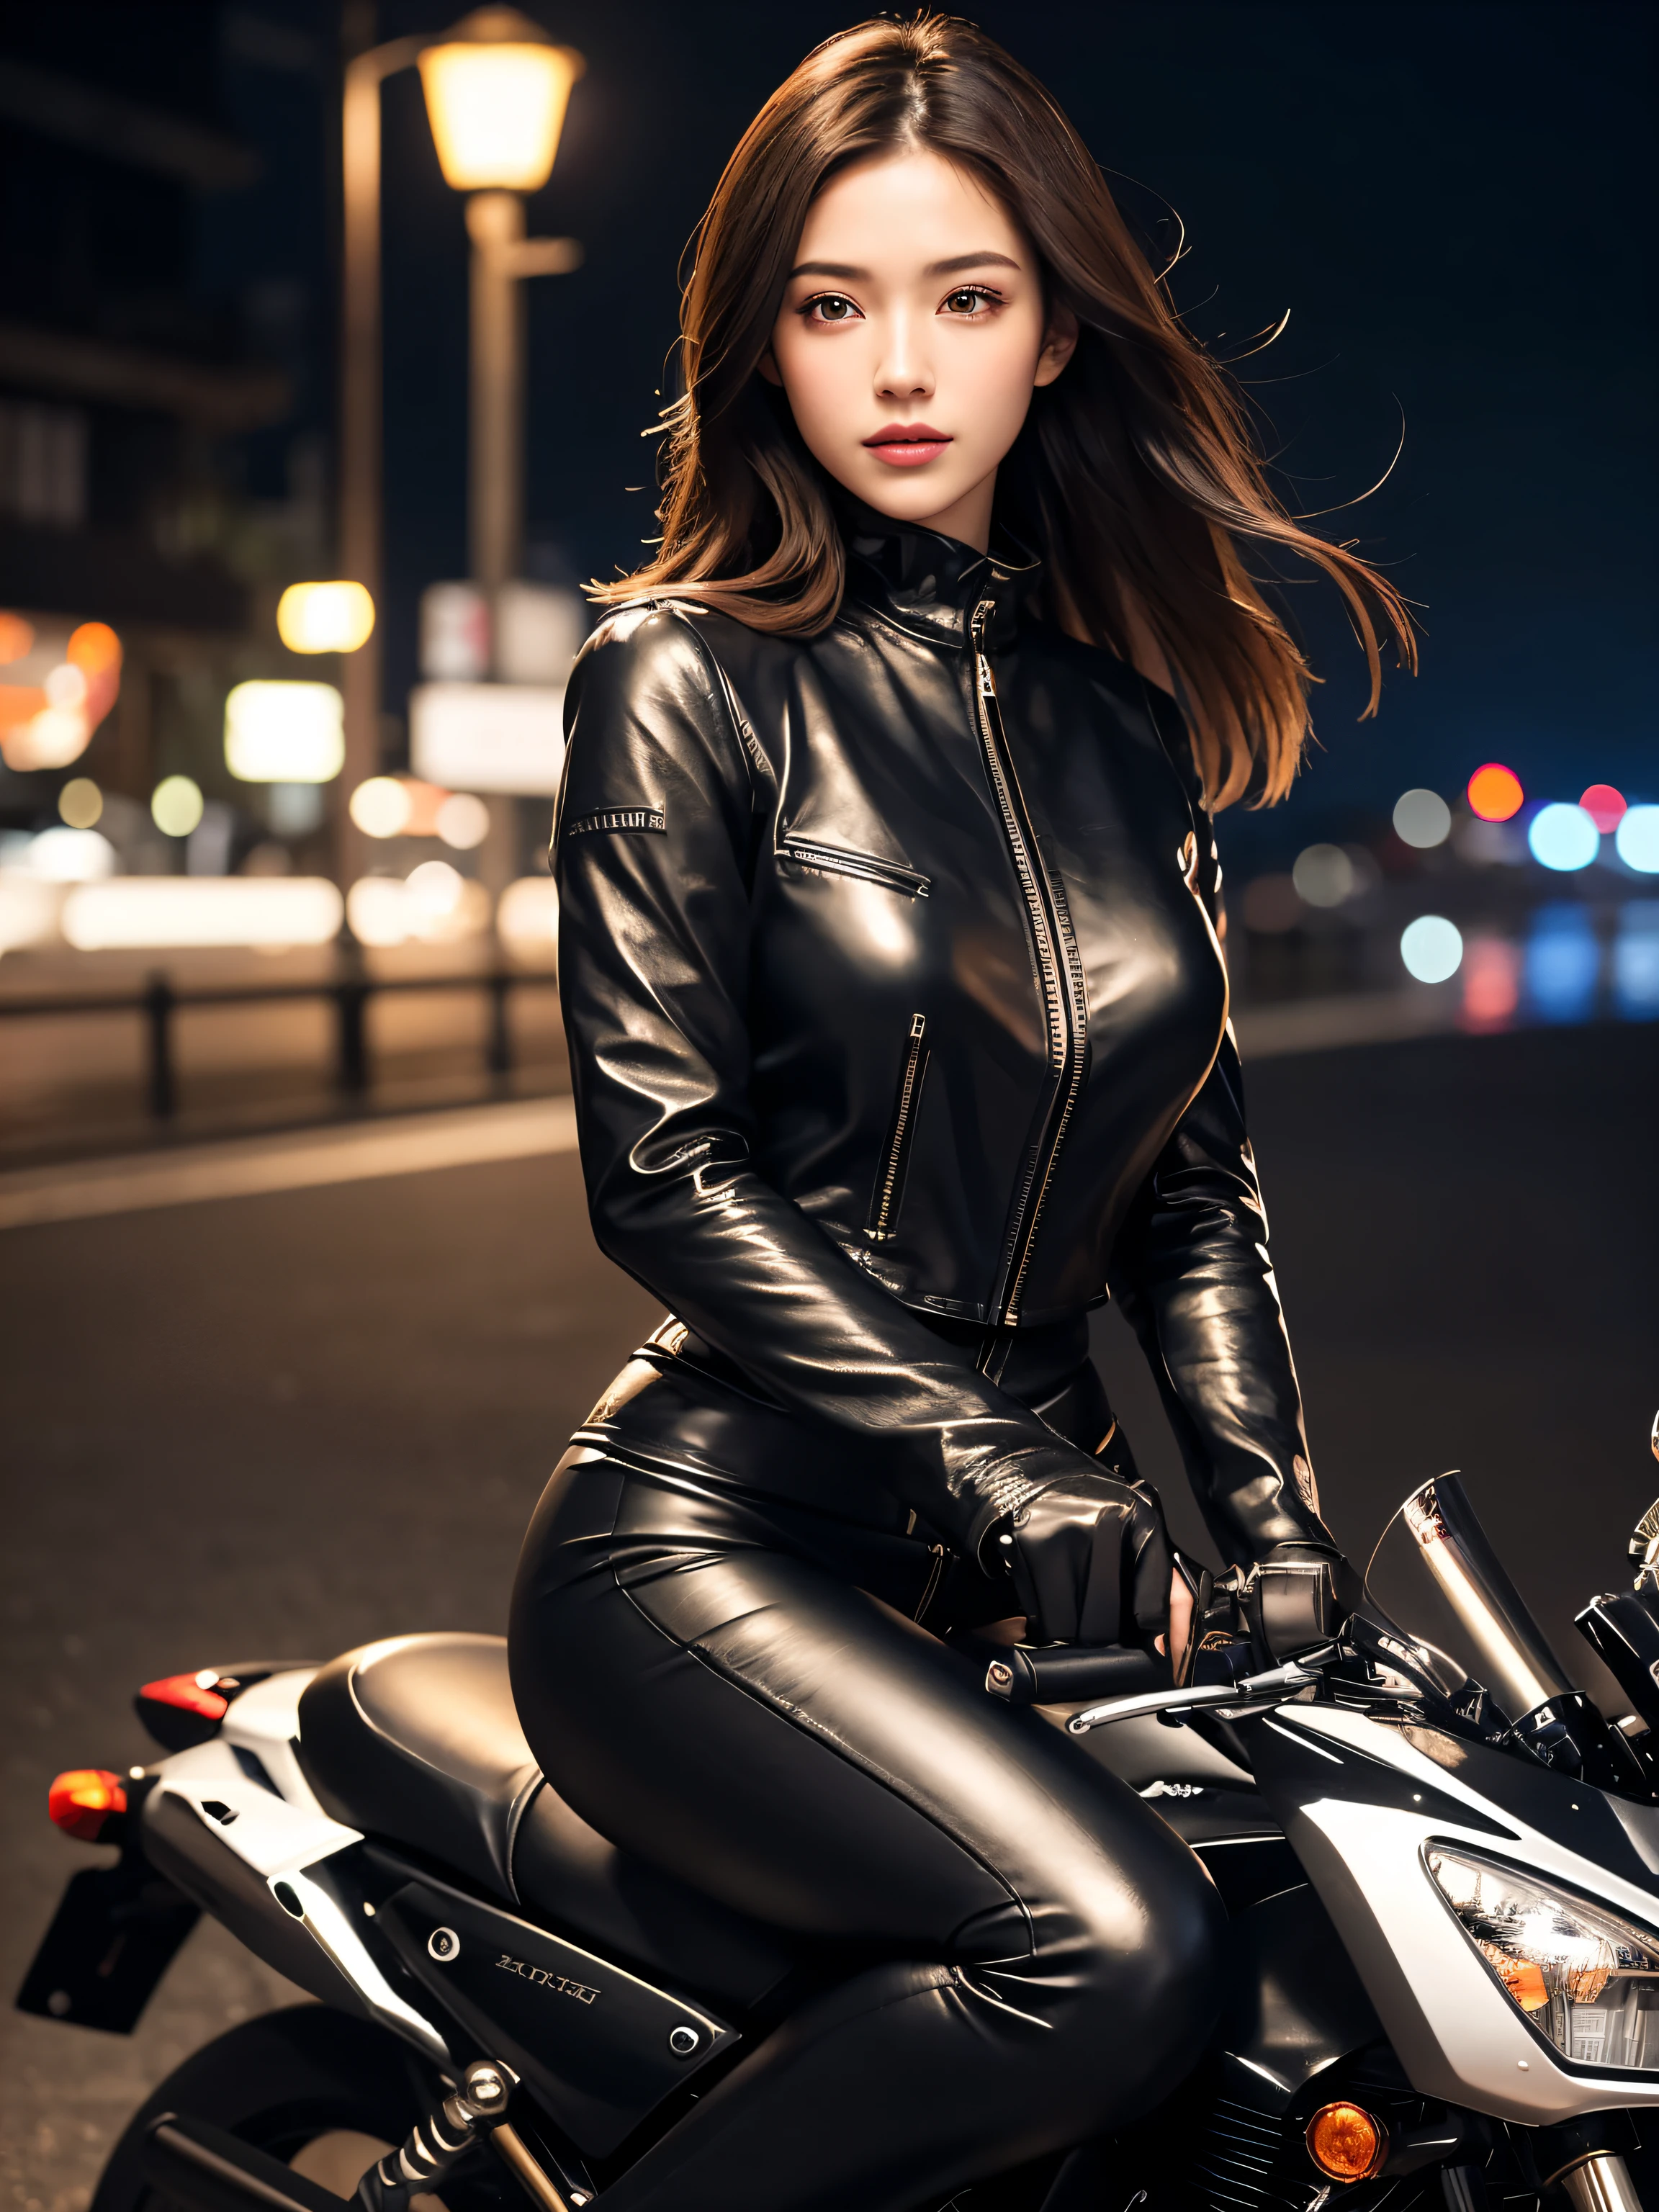 (Stücktische), Ganzkörperaufnahme, Fotos von allen Motorrädern, Süße junge Frauen in Japan, Fahren Sie am Steg mit einem antiken Motorrad in Metallic-Silber, Charmante Form, Schulterlänge: leicht braunes Haar, glänzend, Trage eine schwarze Lederjacke., Roter Bikini aus glänzendem Satin unter der Reitjacke, Schwarze Lederhandschuhe, schwarze Lederhose, Schwarze High Heels Stiefel, Genießen Sie den nächtlichen Blick auf das Meer, absolut schönes Gesicht., doppeltes Augenlid, natürliches Make-up, lange Wimpern, schimmernde Lippen, 8K-Auflösung, hohe Detailgenauigkeit, detaillierte Frisur, Detailliertes Gesicht, schwarze Augen, Agenten, Epos, filmische Beleuchtung, Oktan-Rendering, beschwingt, Hyperrealistisch, hellhäutig, perfekte Gliedmaßen, Perfekte Anatomie